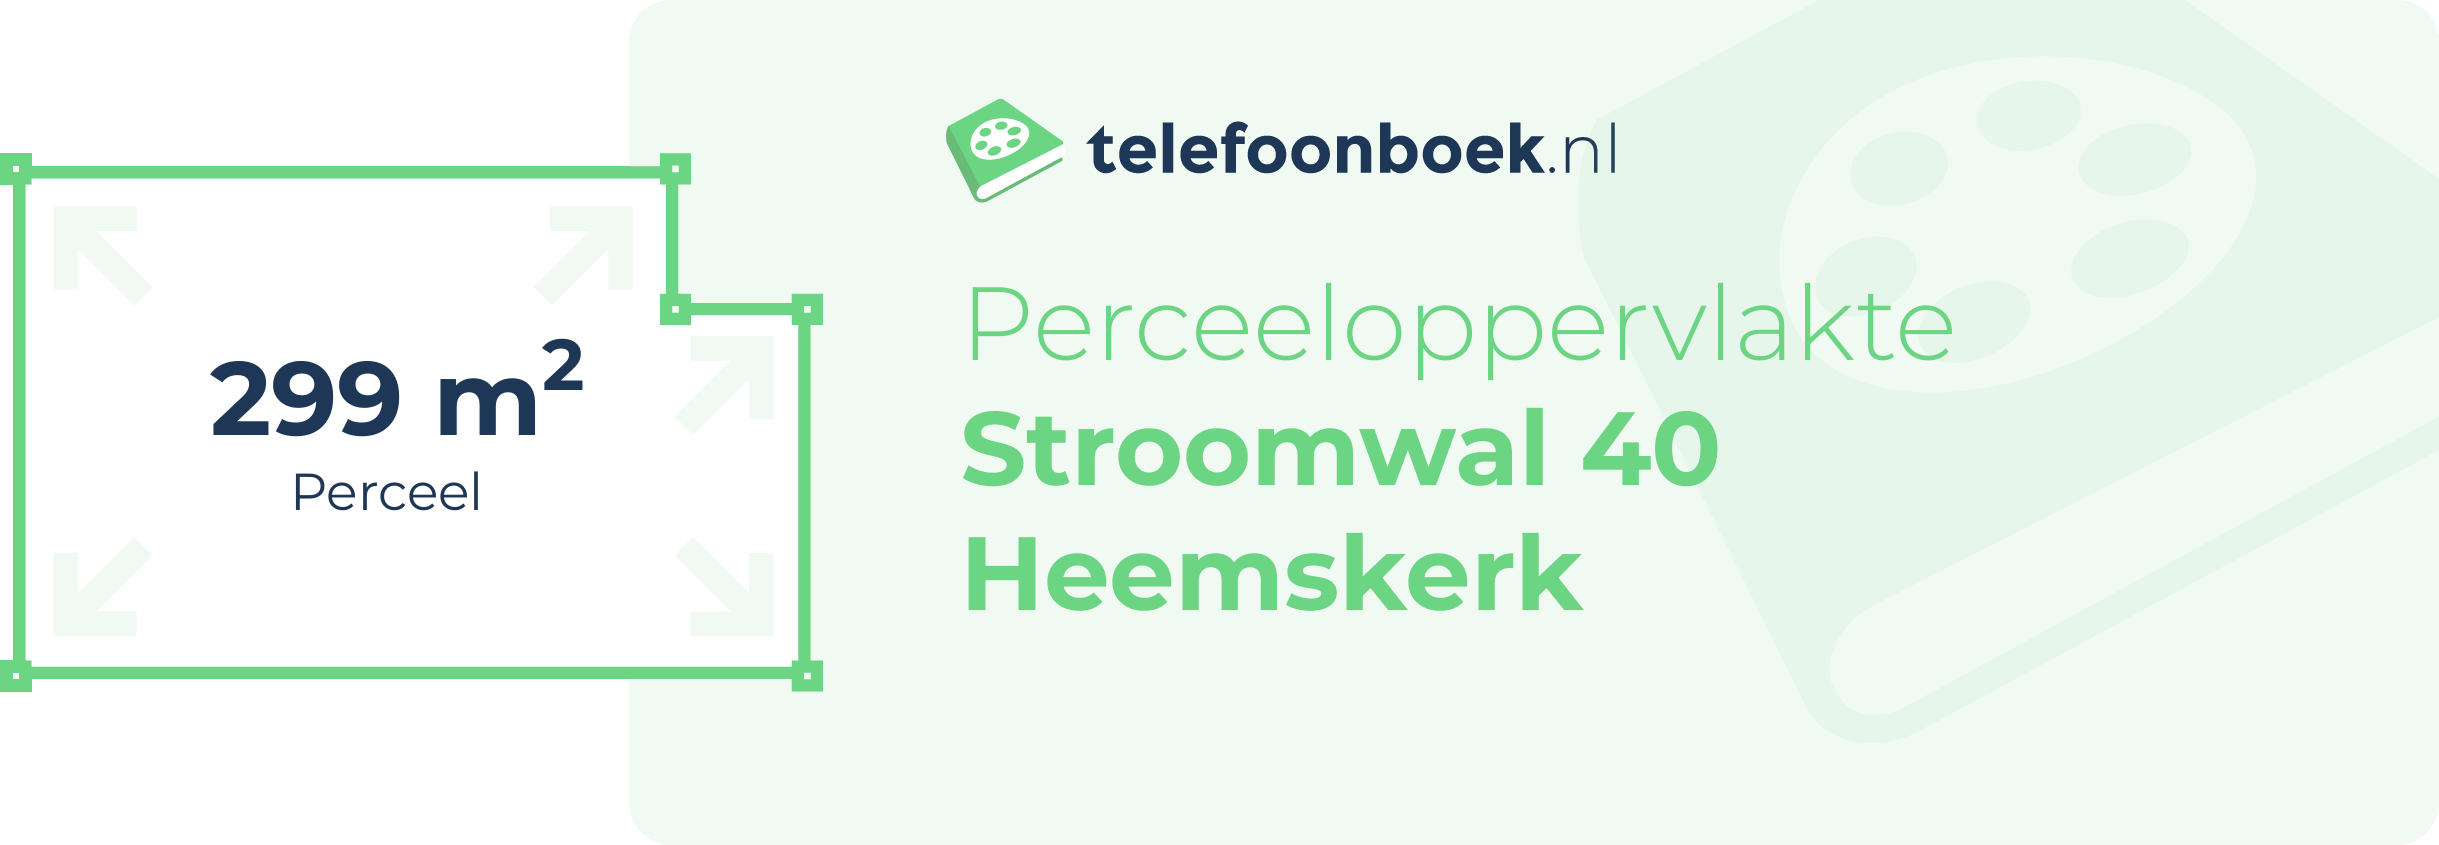 Perceeloppervlakte Stroomwal 40 Heemskerk